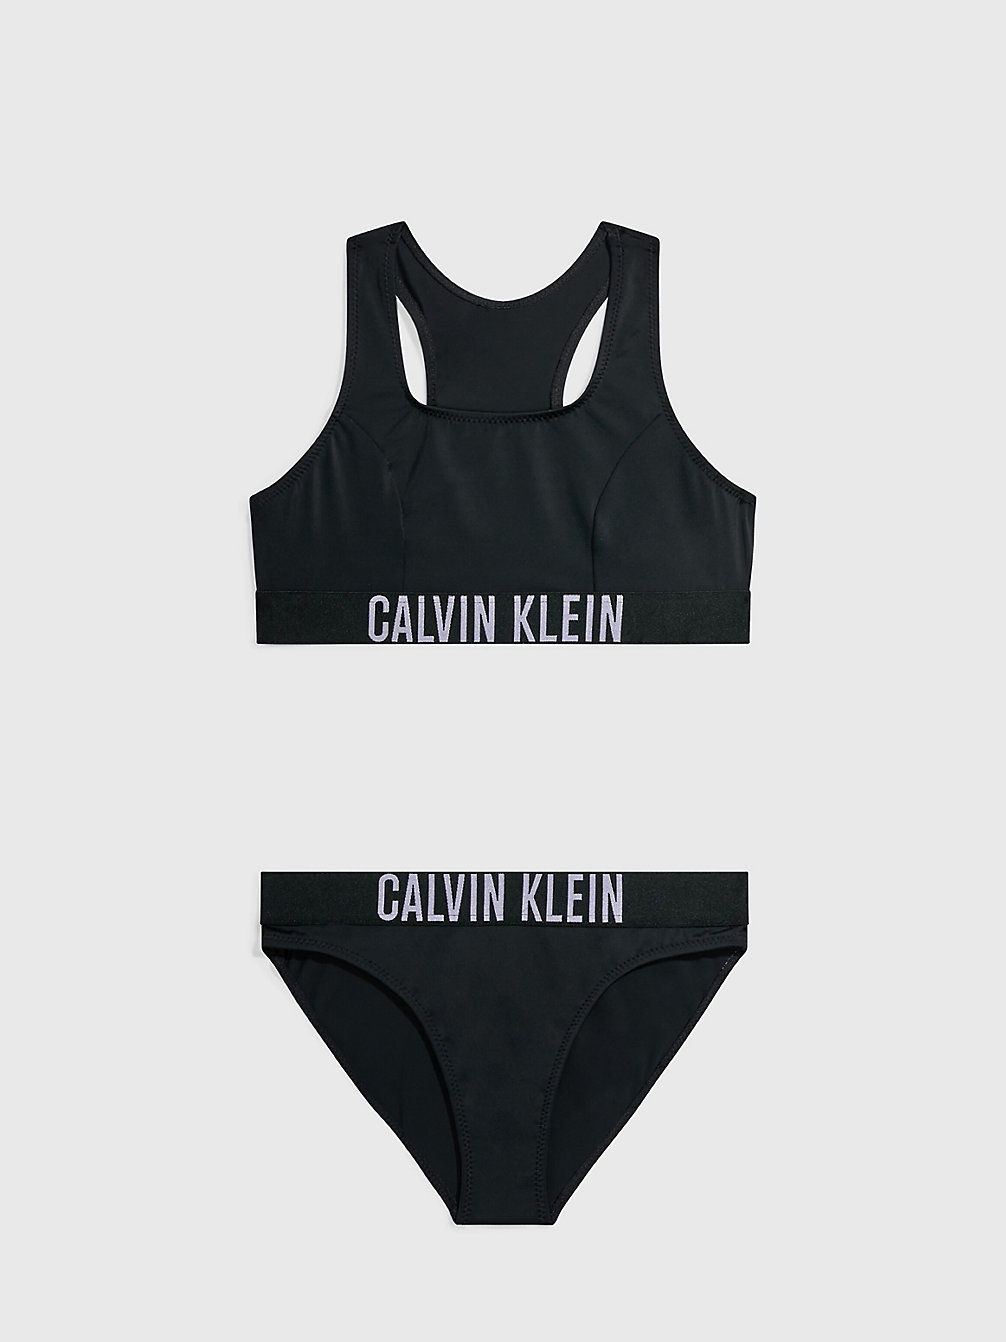 PVH BLACK > Bikini-Set Mit Bralette Für Mädchen - Intense Power > undefined girls - Calvin Klein